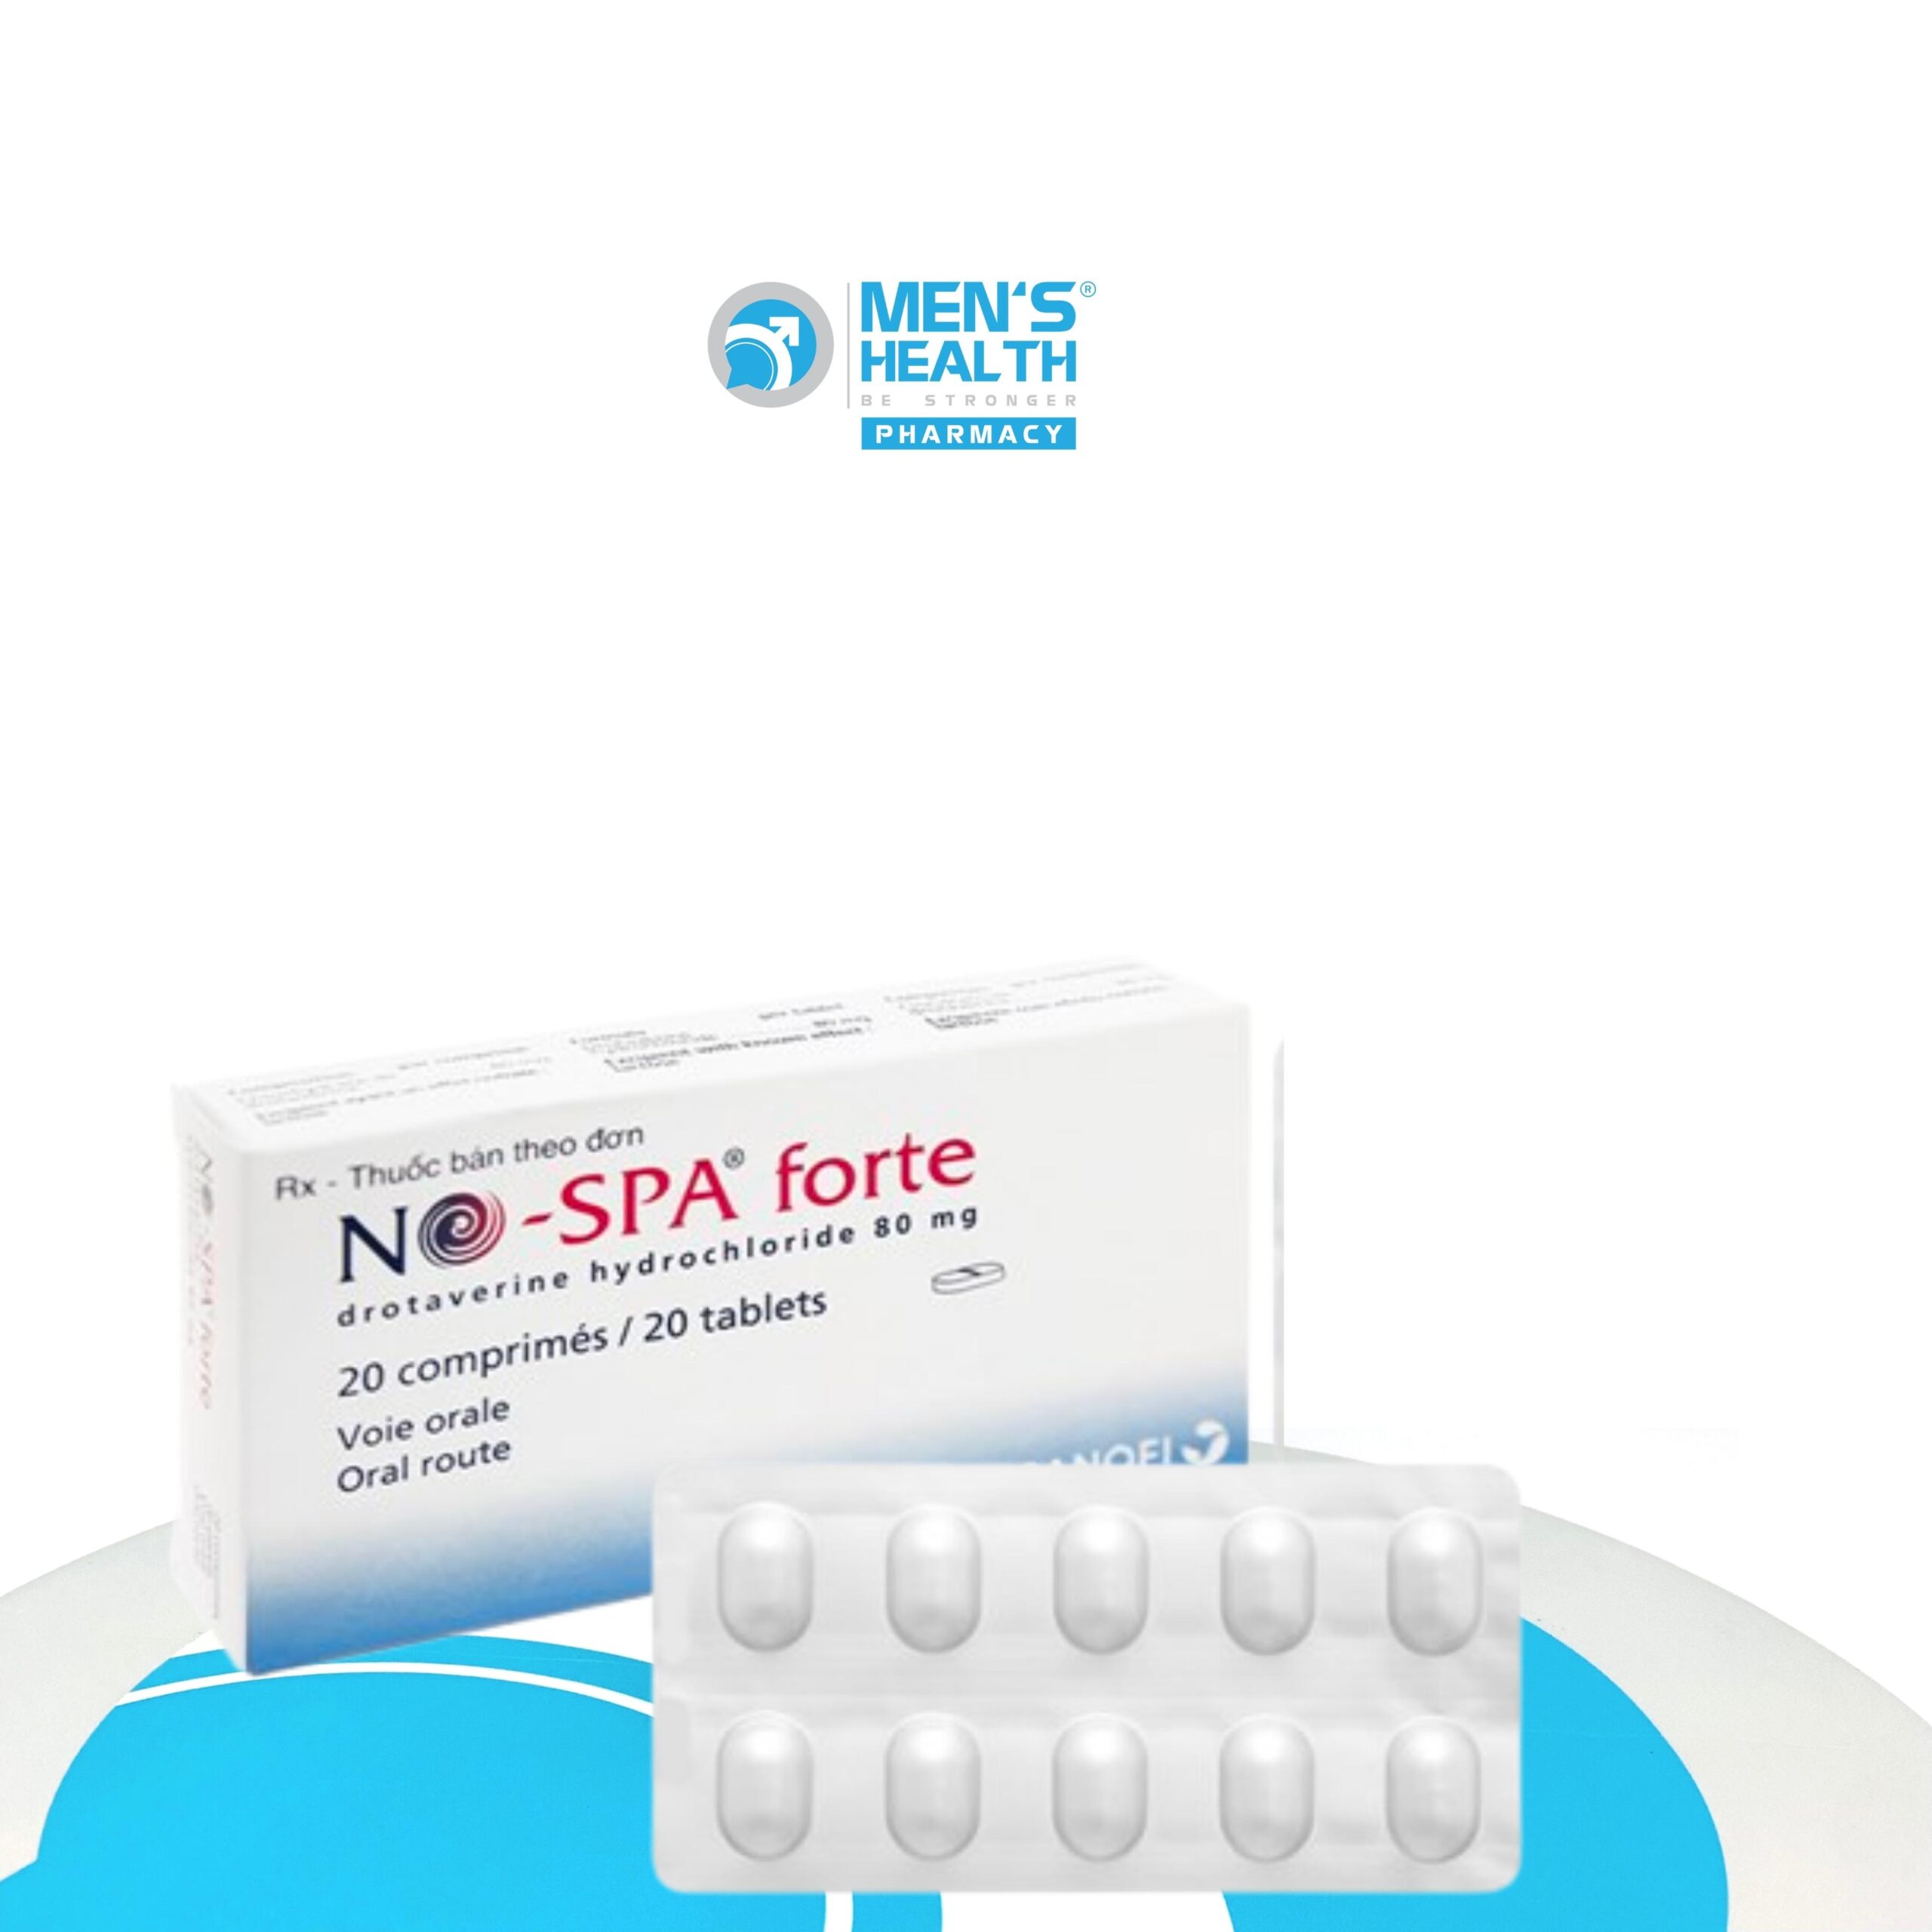 NO-SPA Forte – Thuốc chống co thắt cơ trơn đường niệu